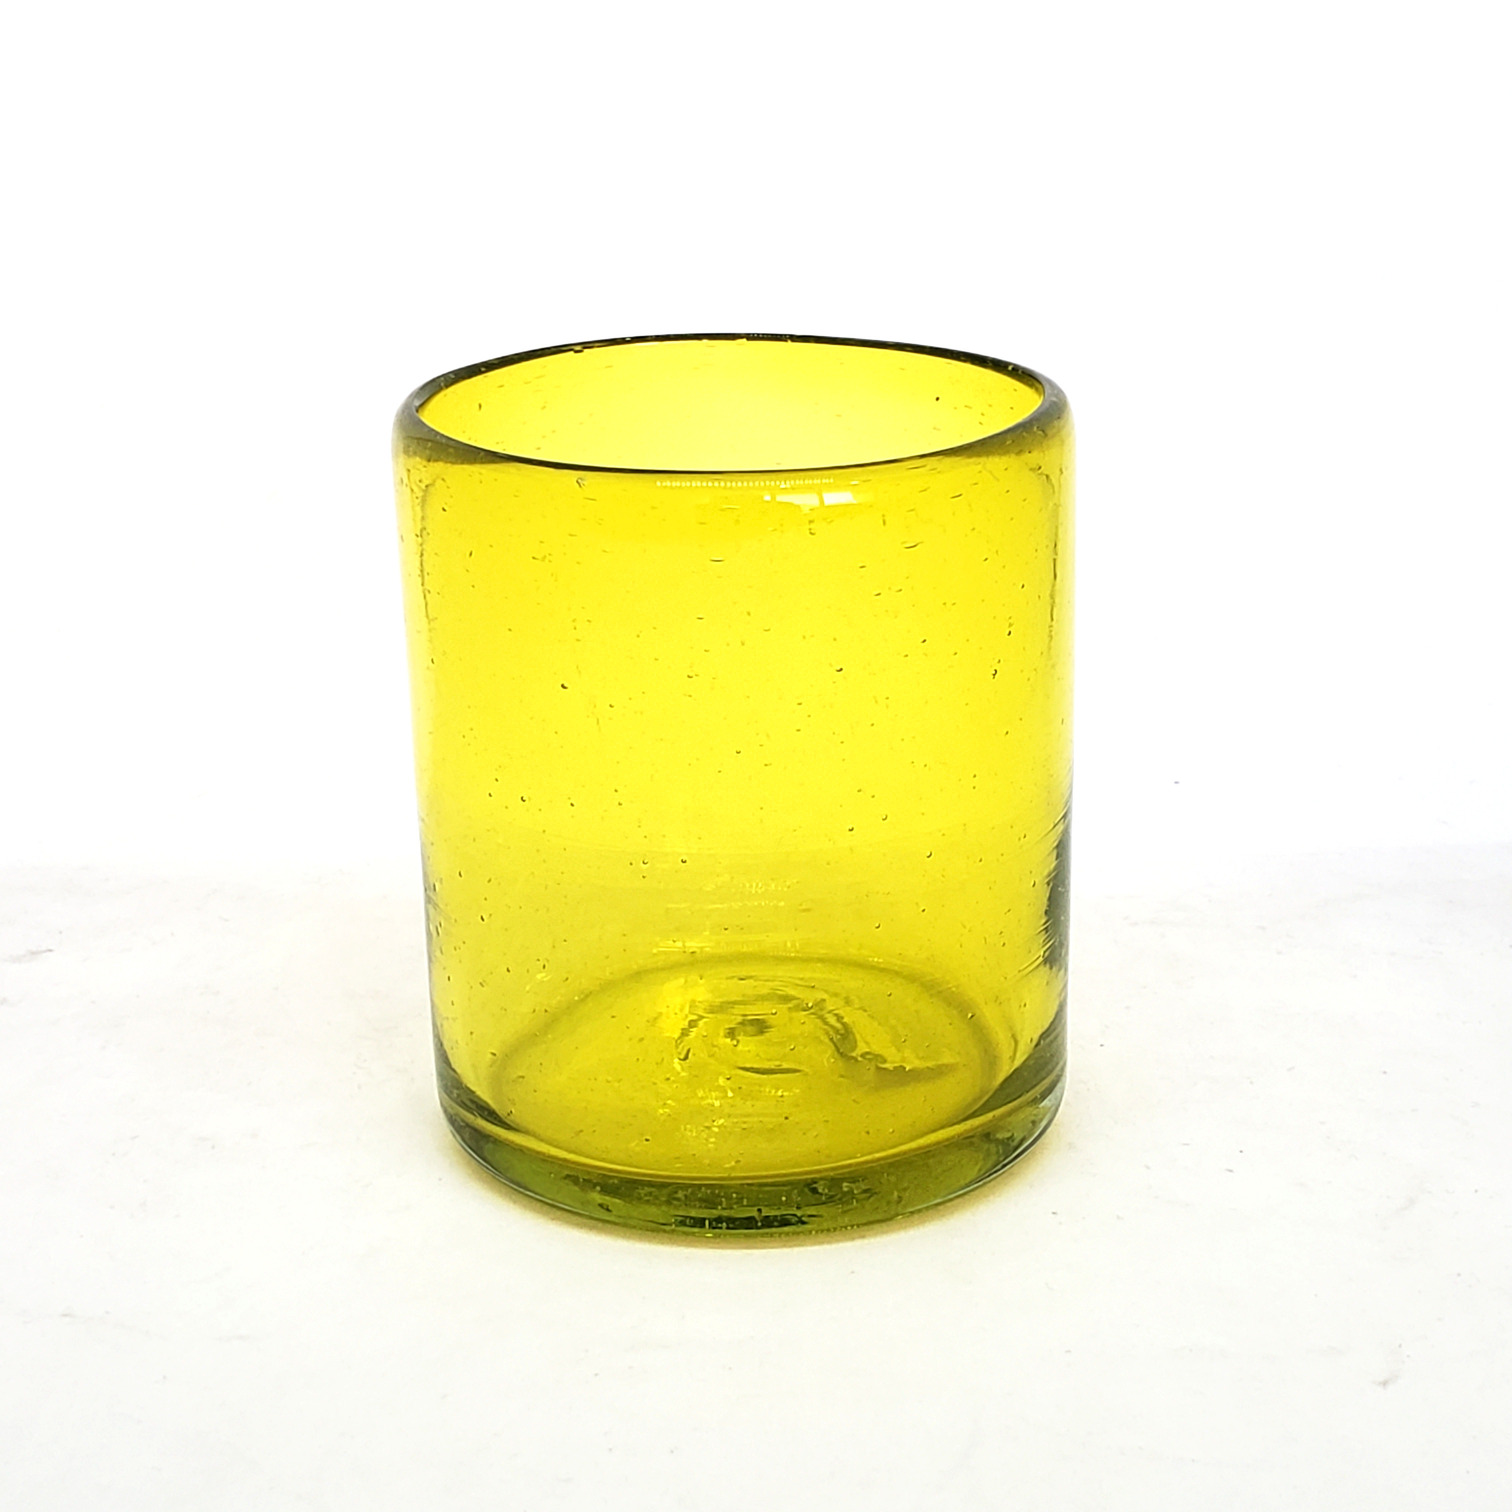 Colores Solidos al Mayoreo / s 9 oz color Amarillo Sólido (set de 6) / Éstos artesanales vasos le darán un toque colorido a su bebida favorita.